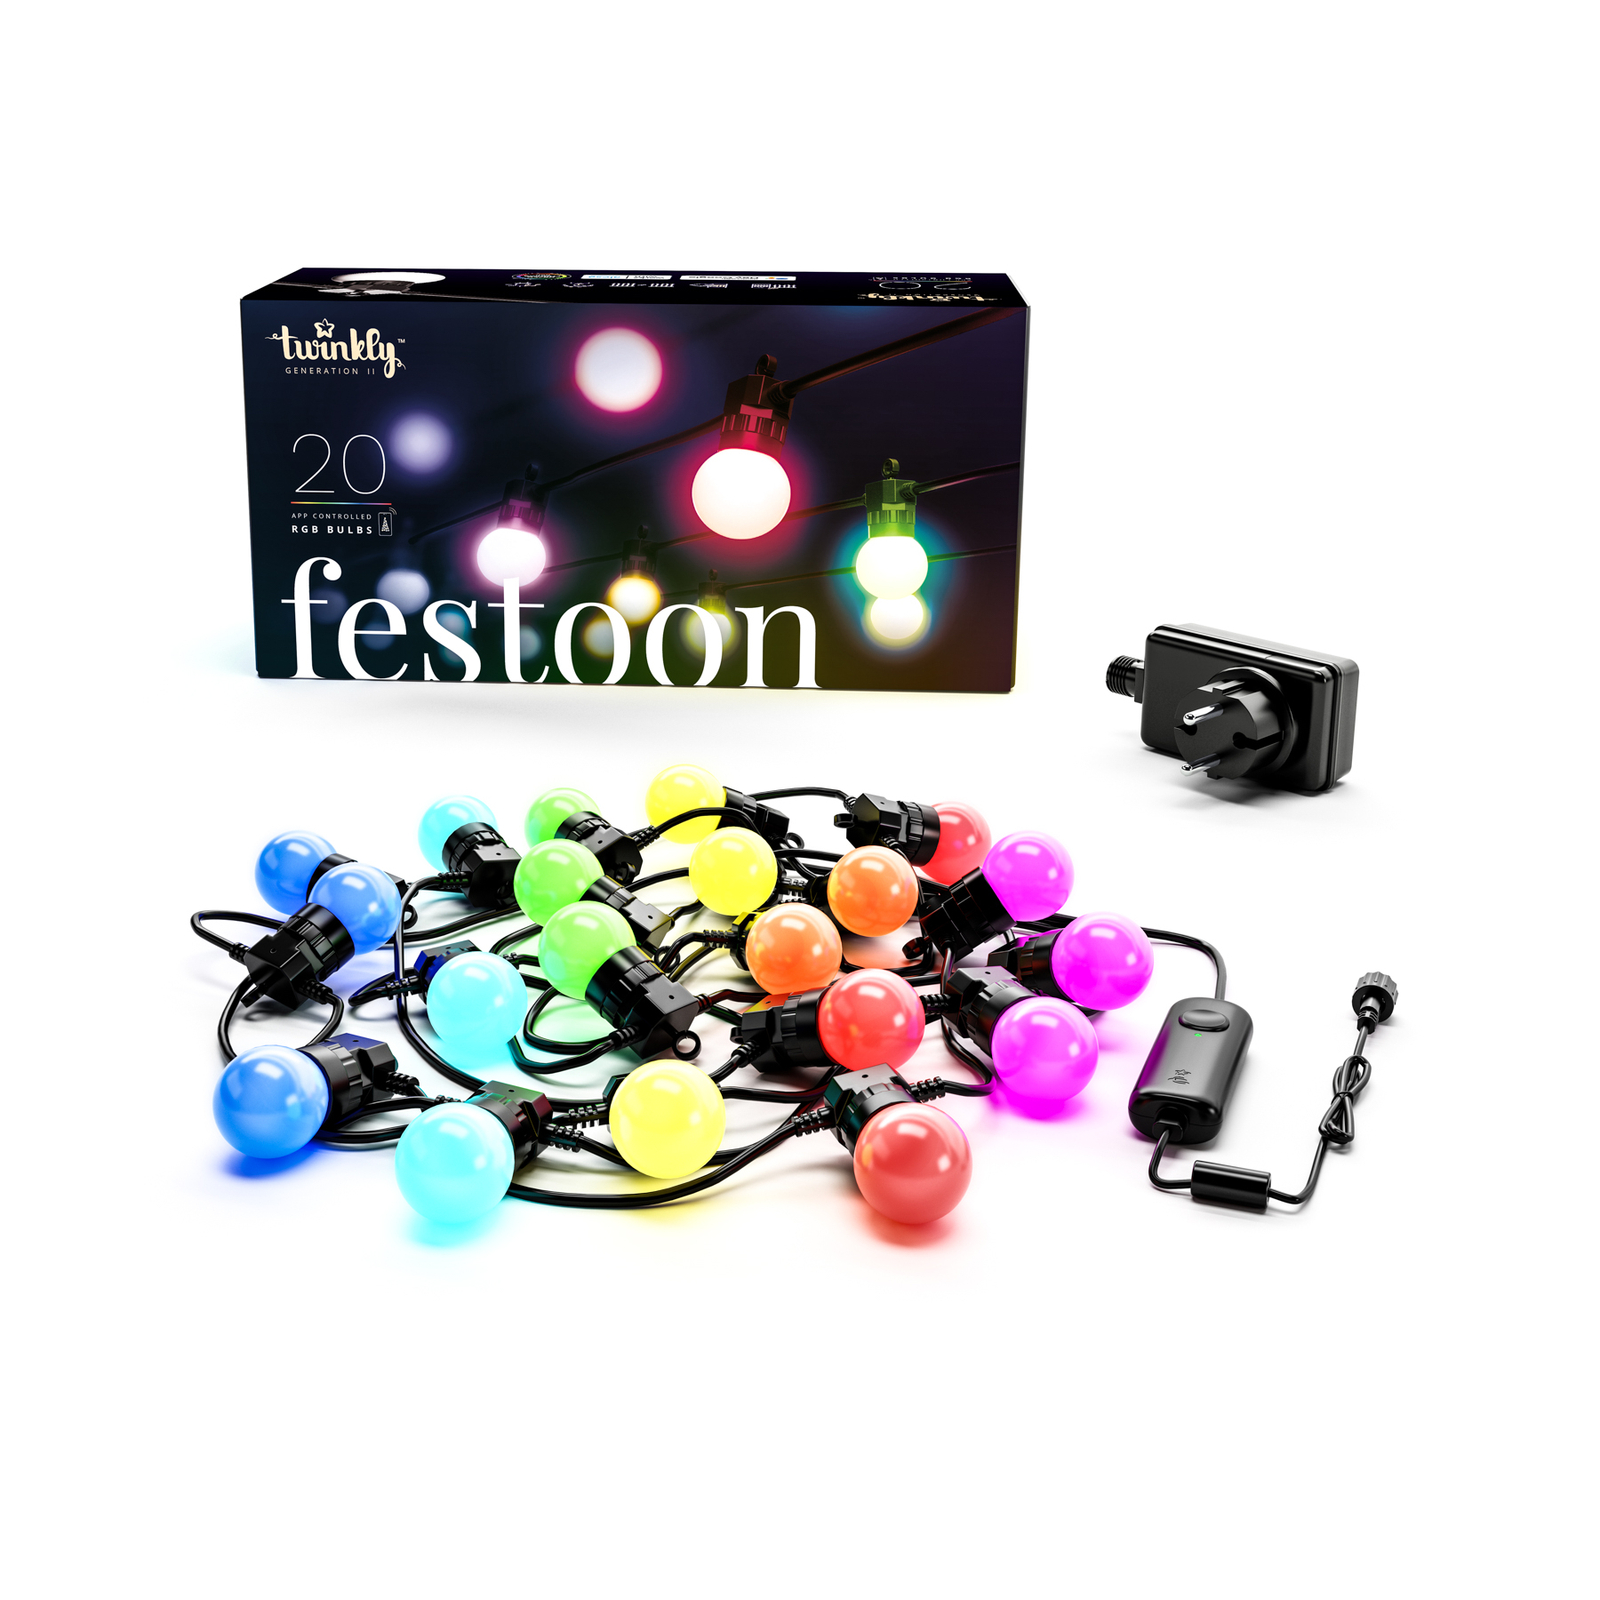 LED-Party-Lichterkette Twinkly Festoon Starter Kit